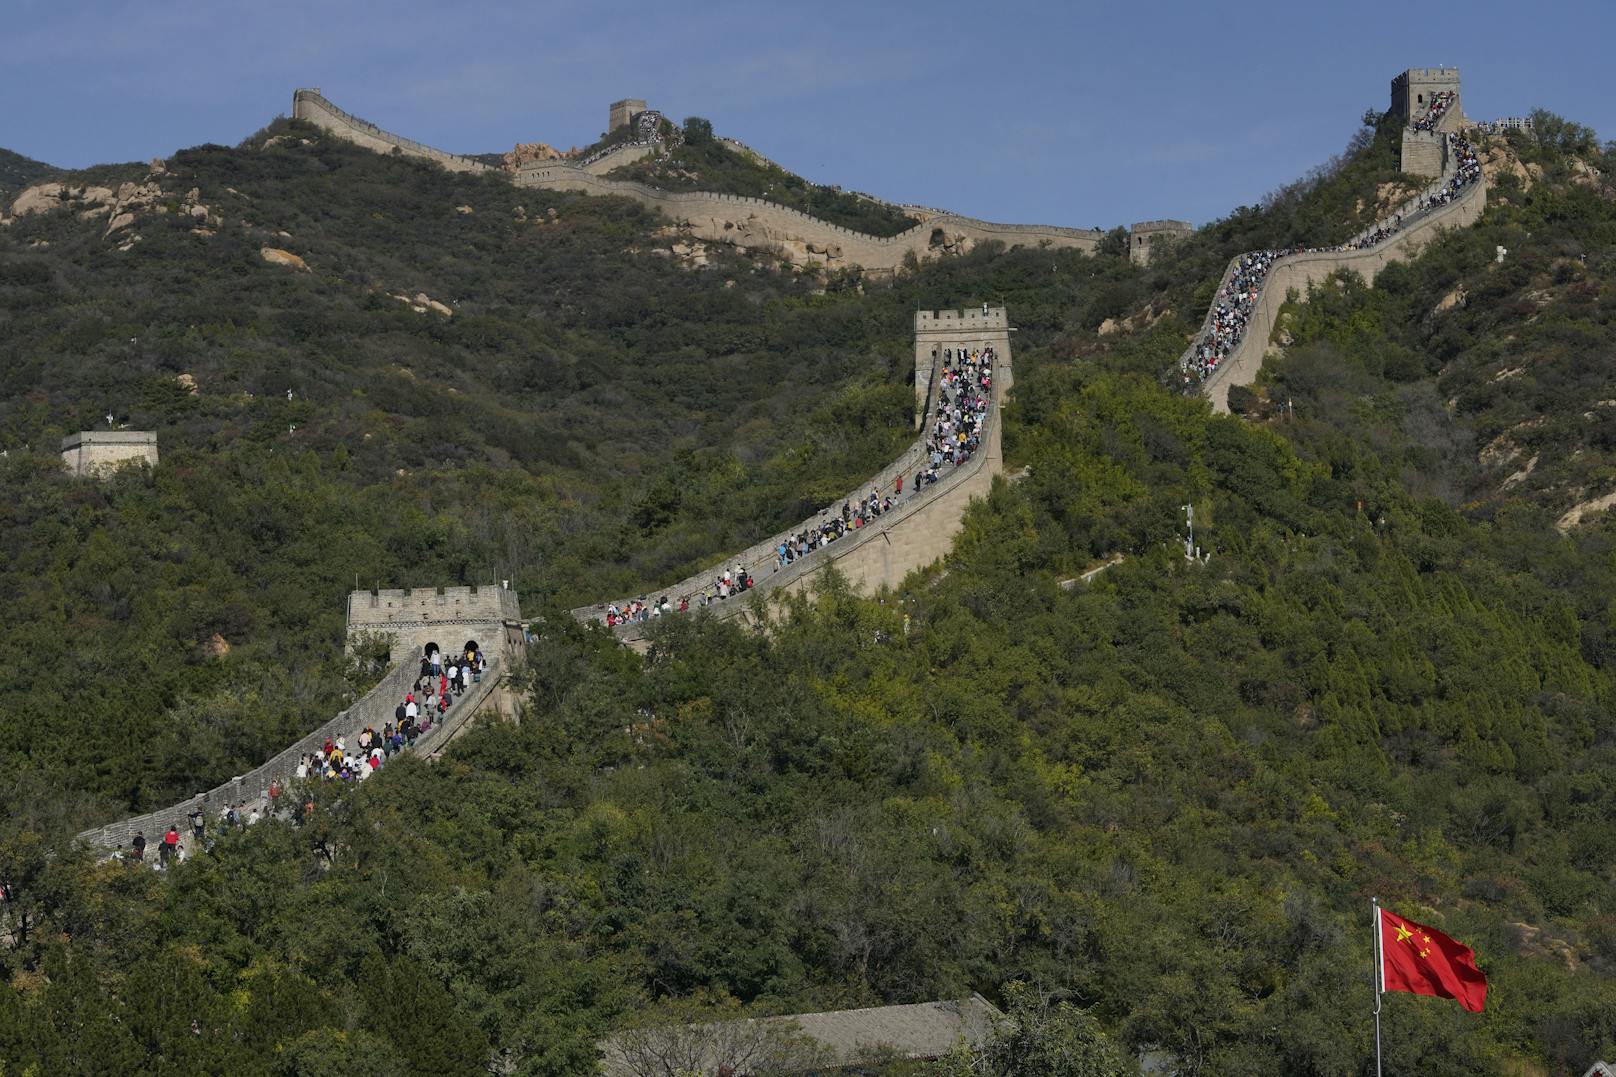 Millionen Touristen strömten auf die Chinesische Mauer, als gäbe es kein Corona.